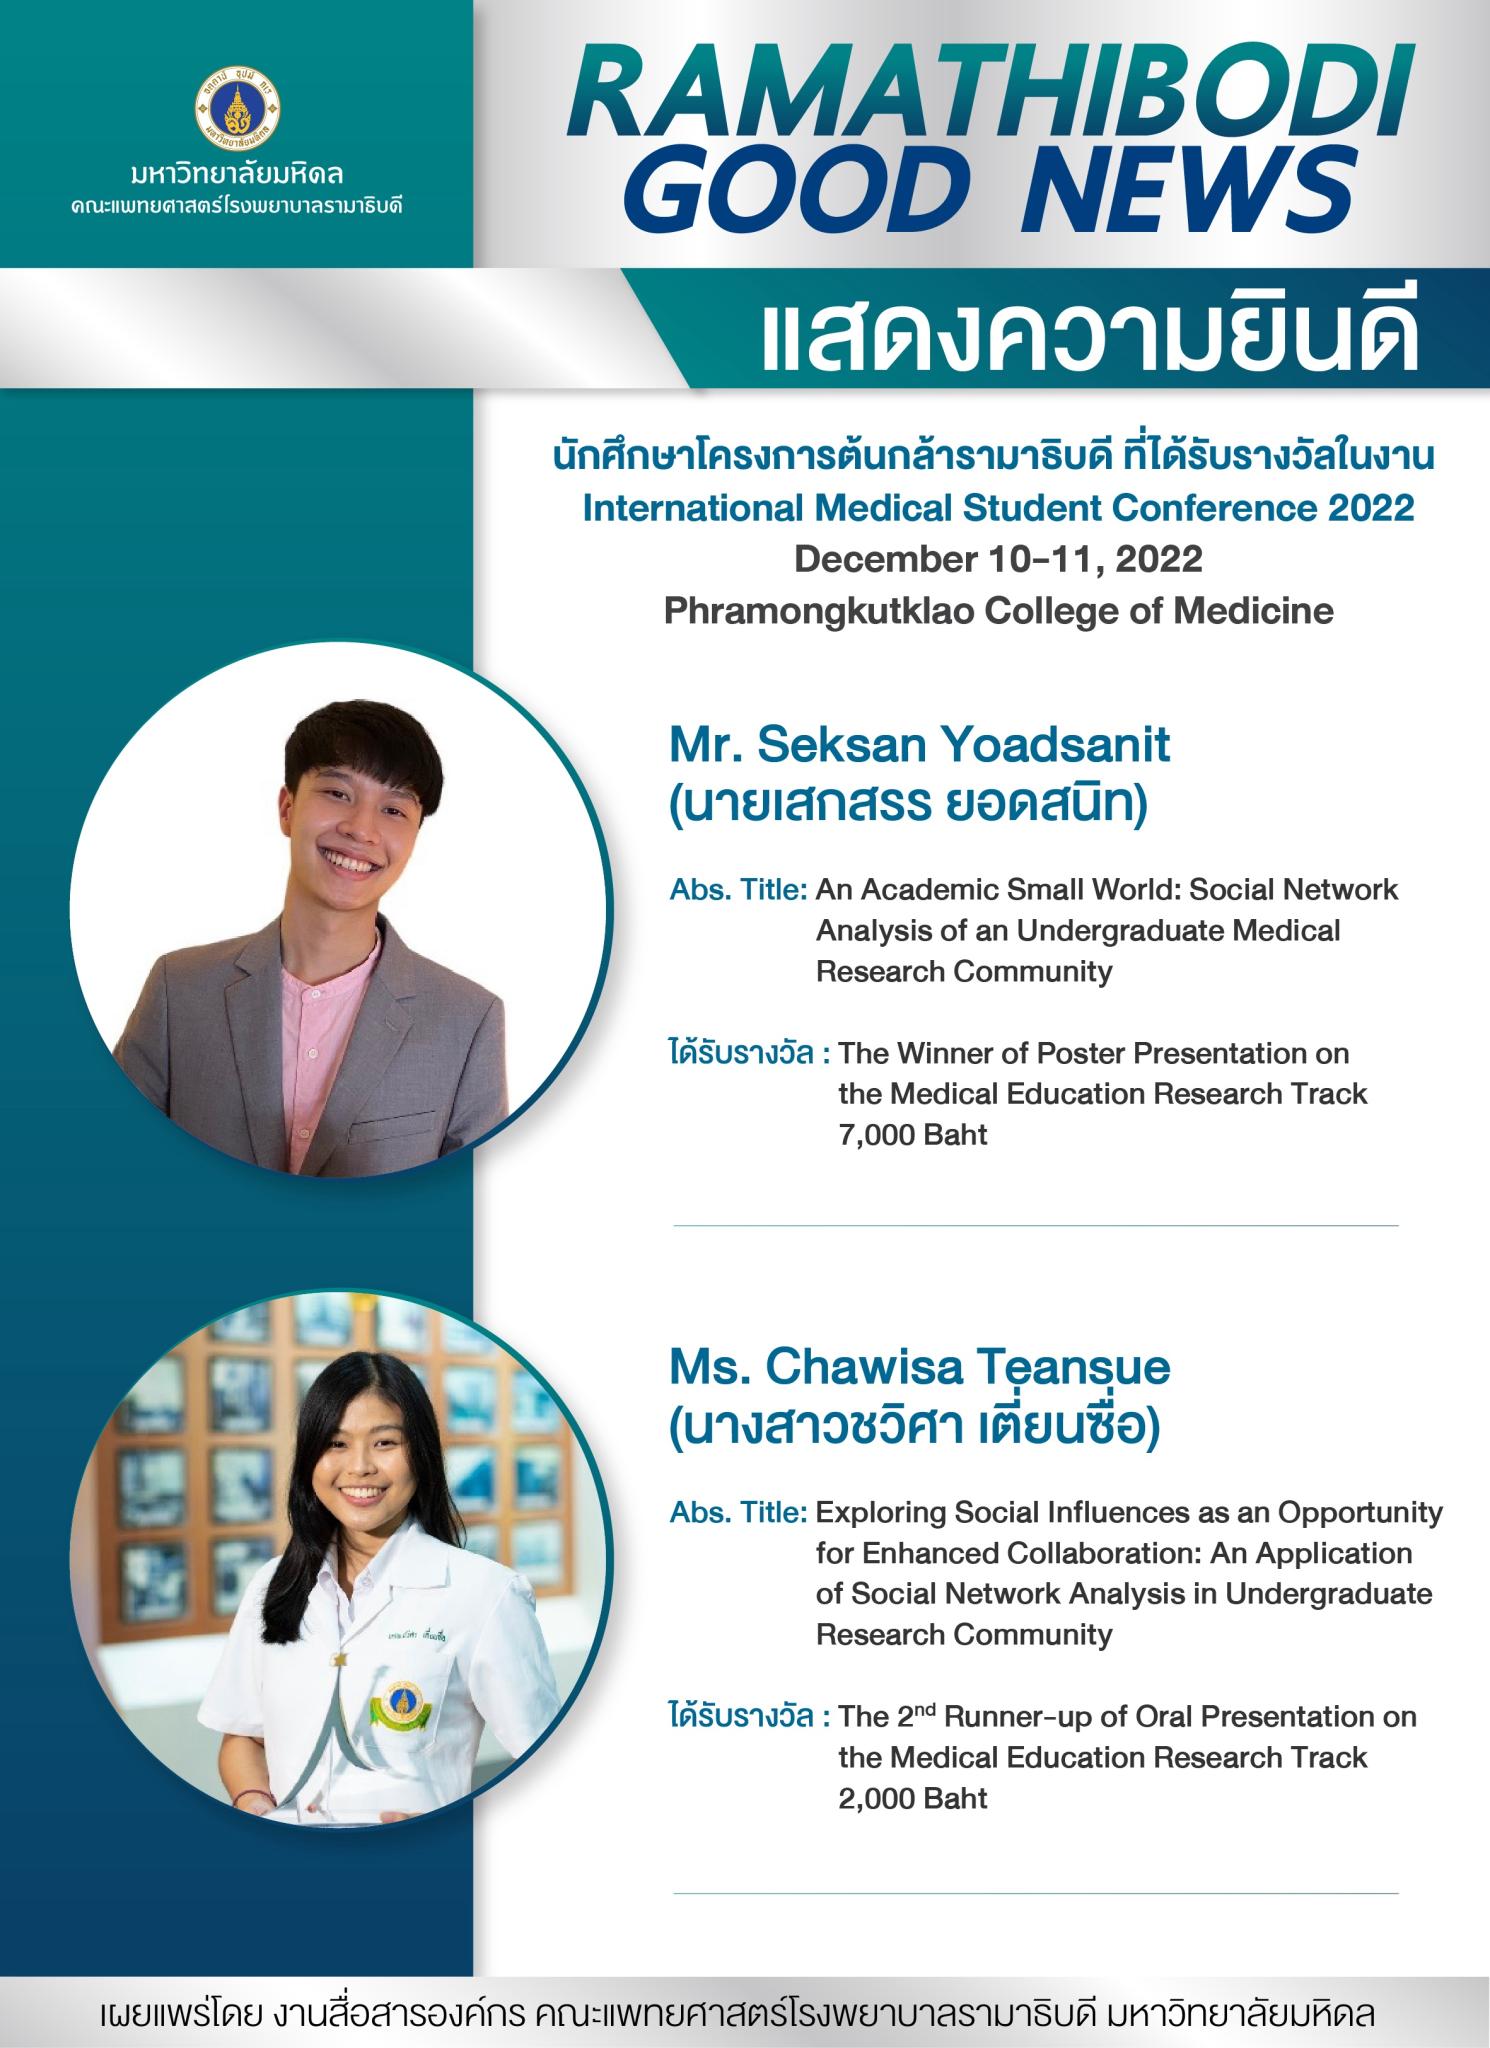 แสดงความยินดี นักศึกษาโครงการต้นกล้ารามาธิบดี ที่ได้รับรางวัลในงาน International Medical Student Conference 2022